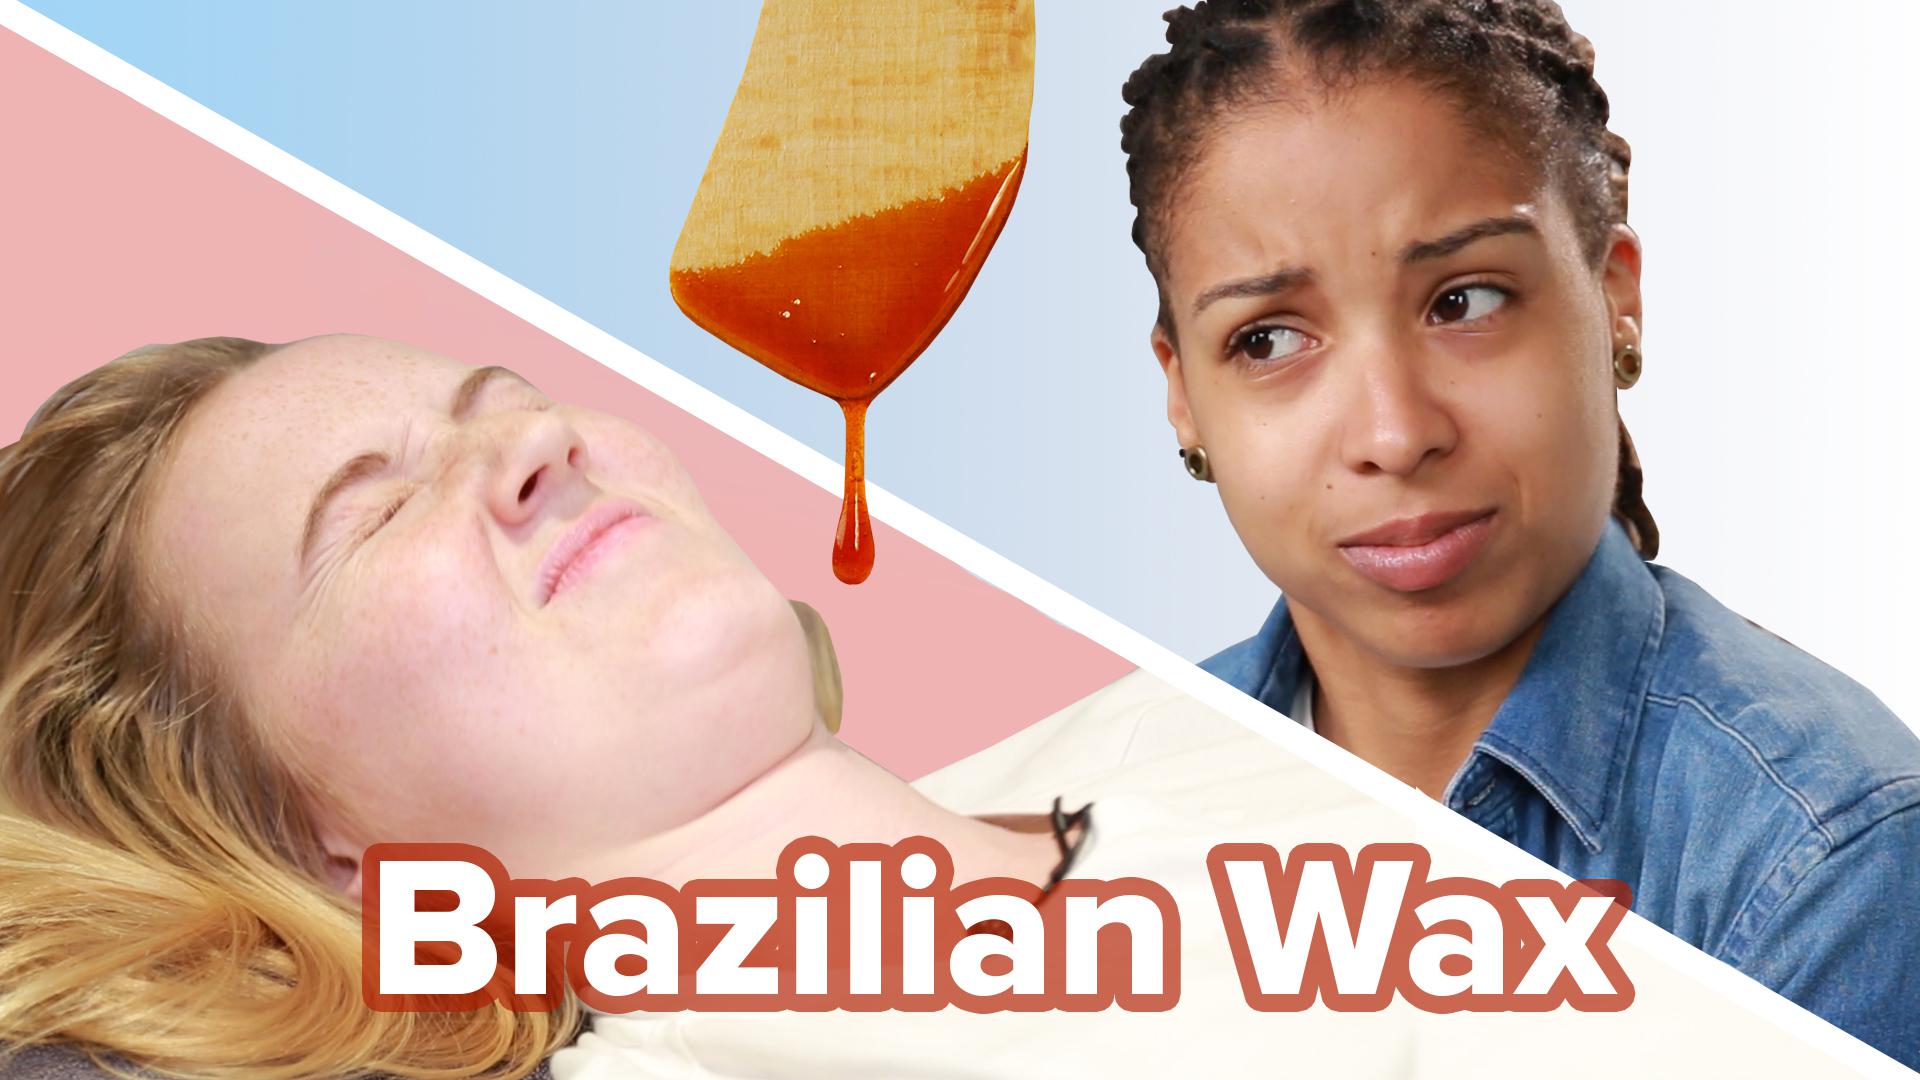 brandy gautreaux reccomend video of brazilian waxing pic